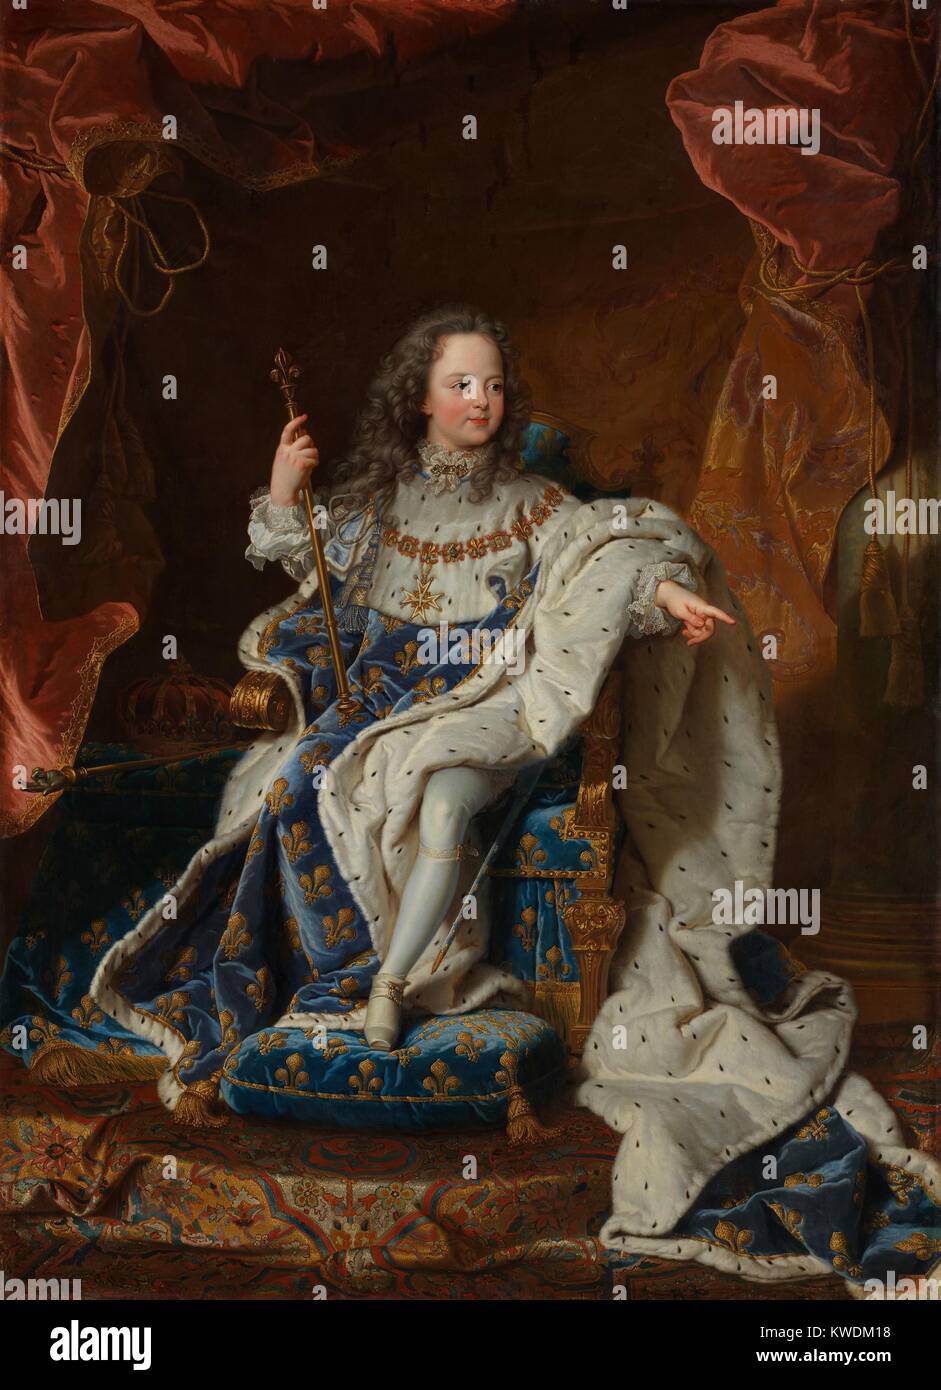 LOUIS XV, von Hyacinthe Rigaud, 1714, französischer Malerei des Barock, Öl auf Leinwand. Er bestieg den Thron im Alter von fünf Jahren, sein Urgroßvater Erfolg, und regierte von 1714 bis 1774 (BSLOC 2017 10 111) Stockfoto